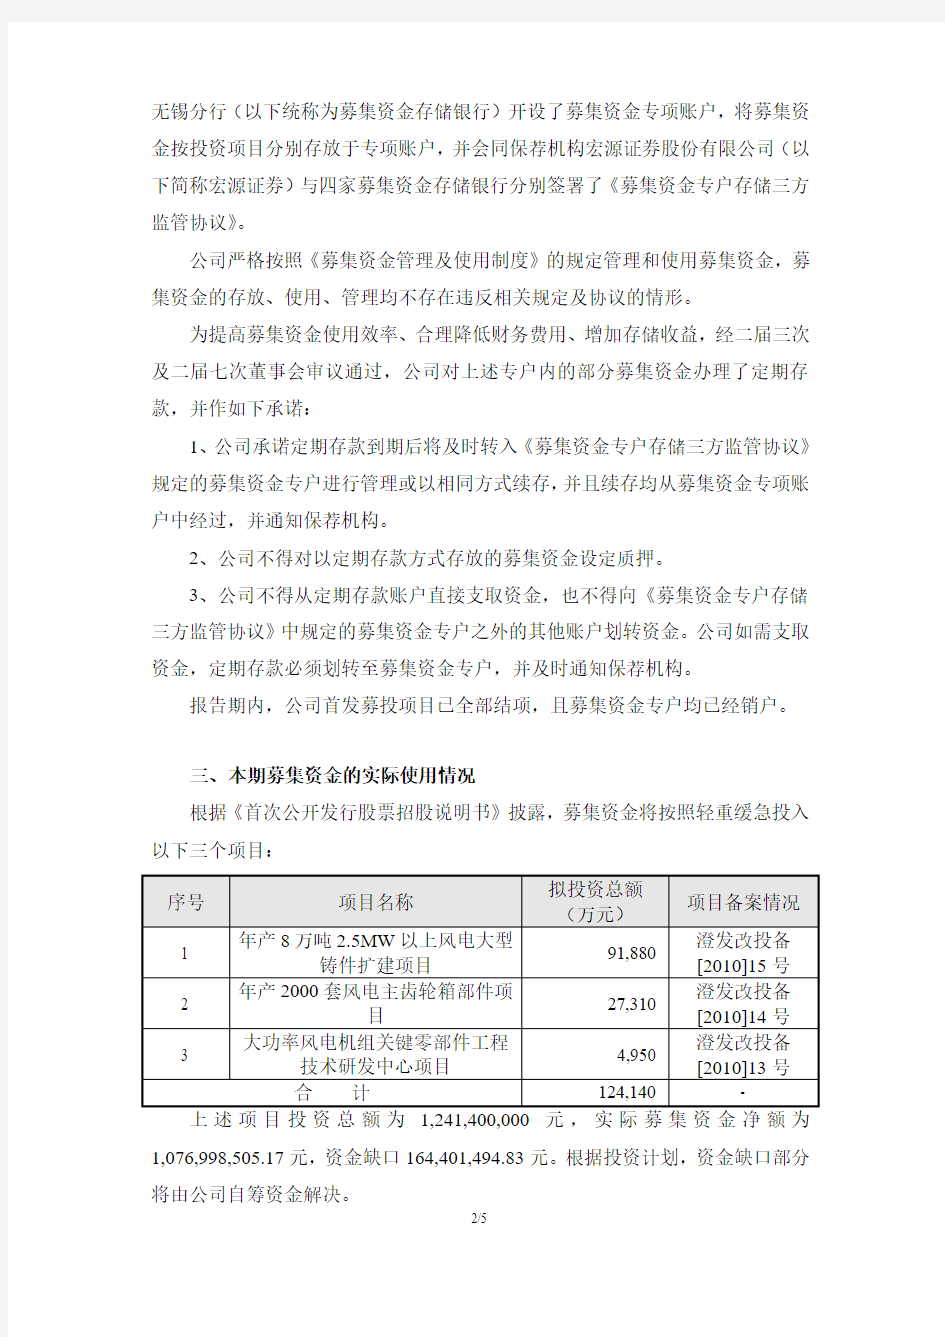 601218江苏吉鑫风能科技股份有限公司2020年募集资金存放与实际使2021-02-05